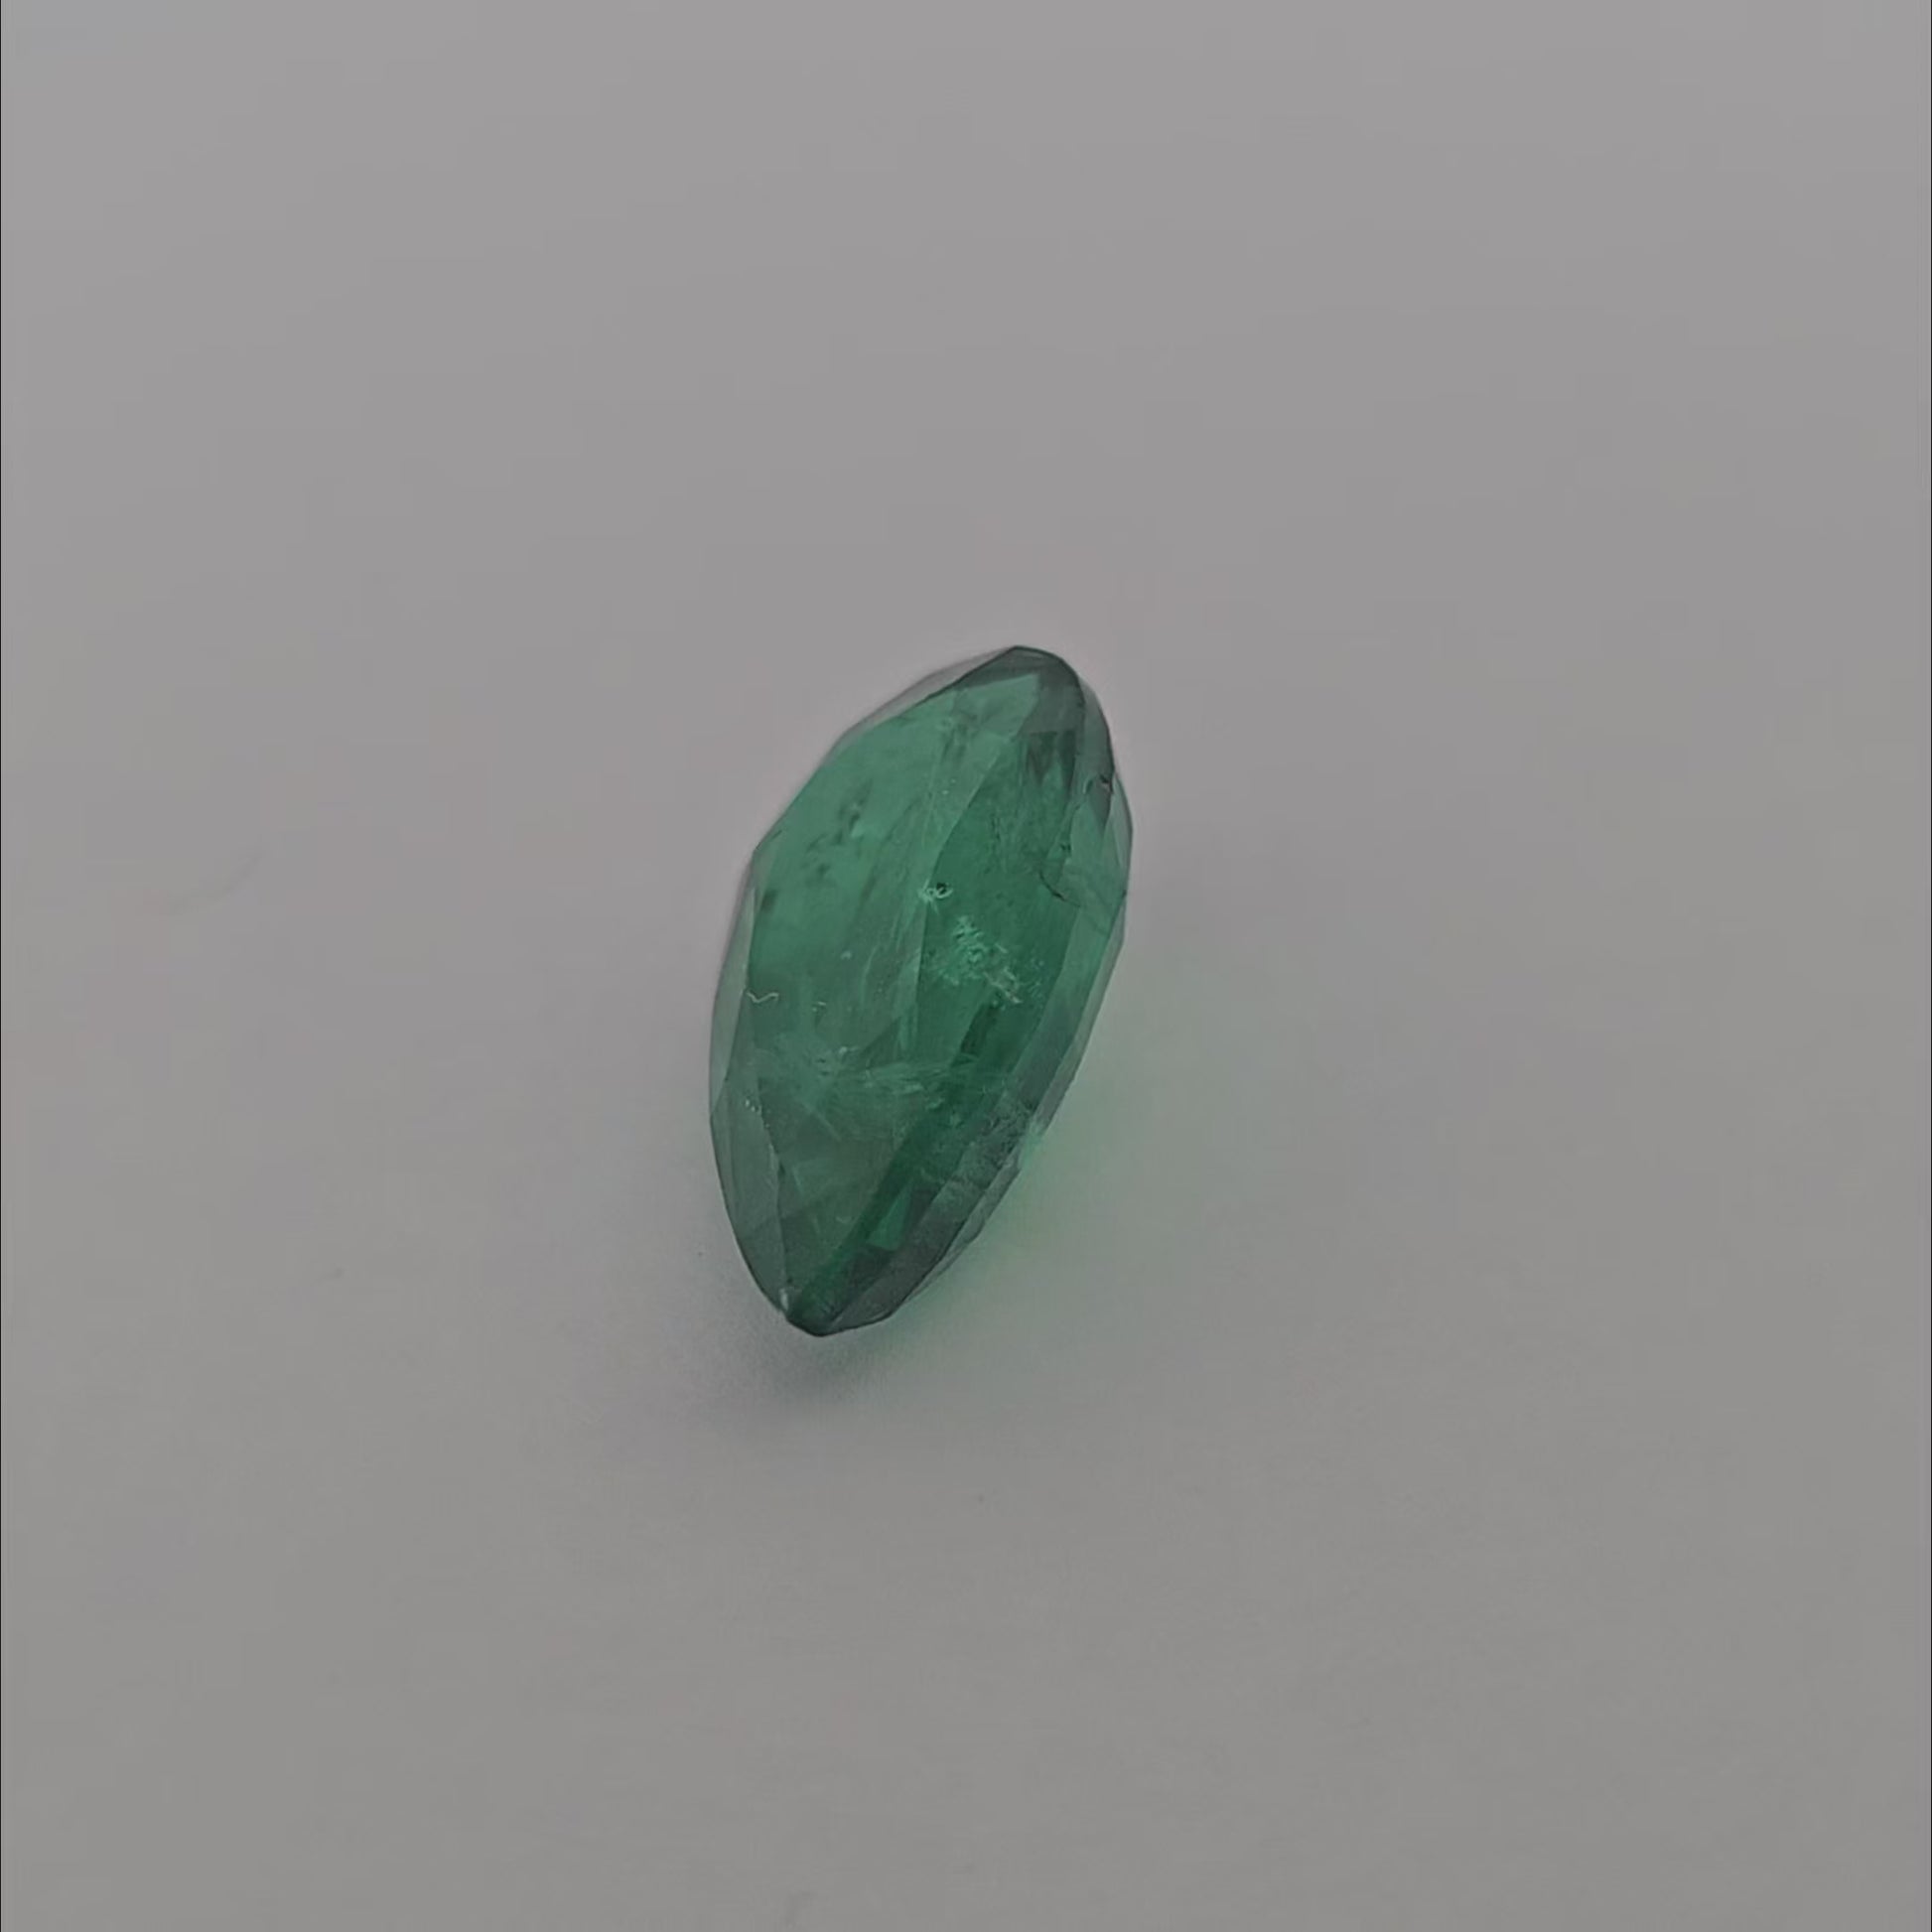 Natural Zambian Emerald Stone 5.53 Carats Pear Cut 15.71 x 9.19 x 6.04 mm